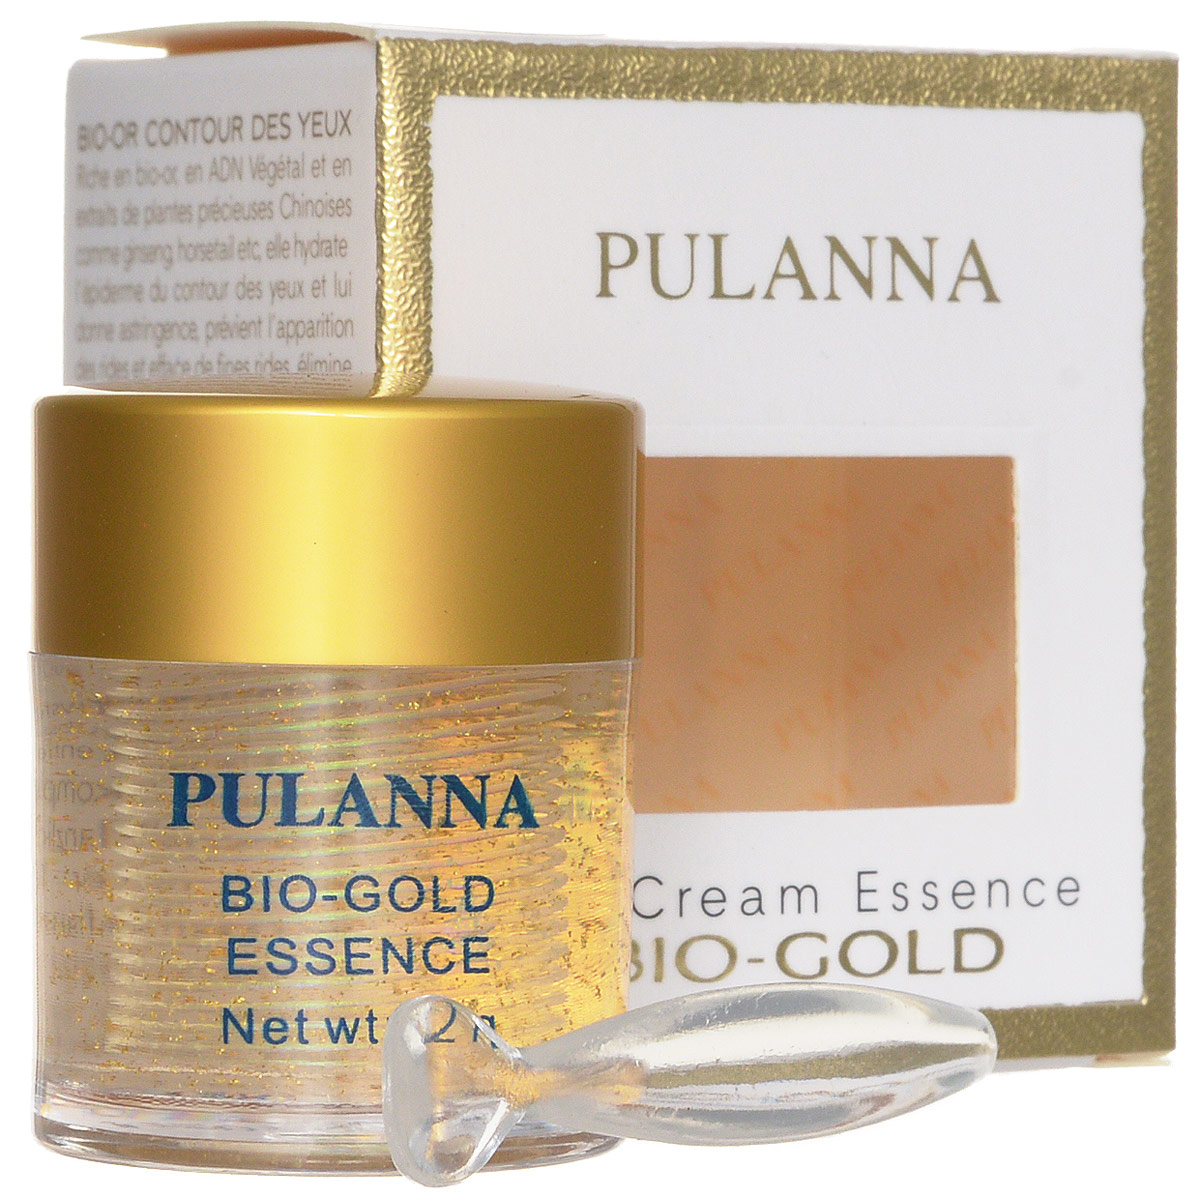 заказать и купить Pulanna Био-золотой гель для век на основе био-золота - Bio-gold Essence 21 г